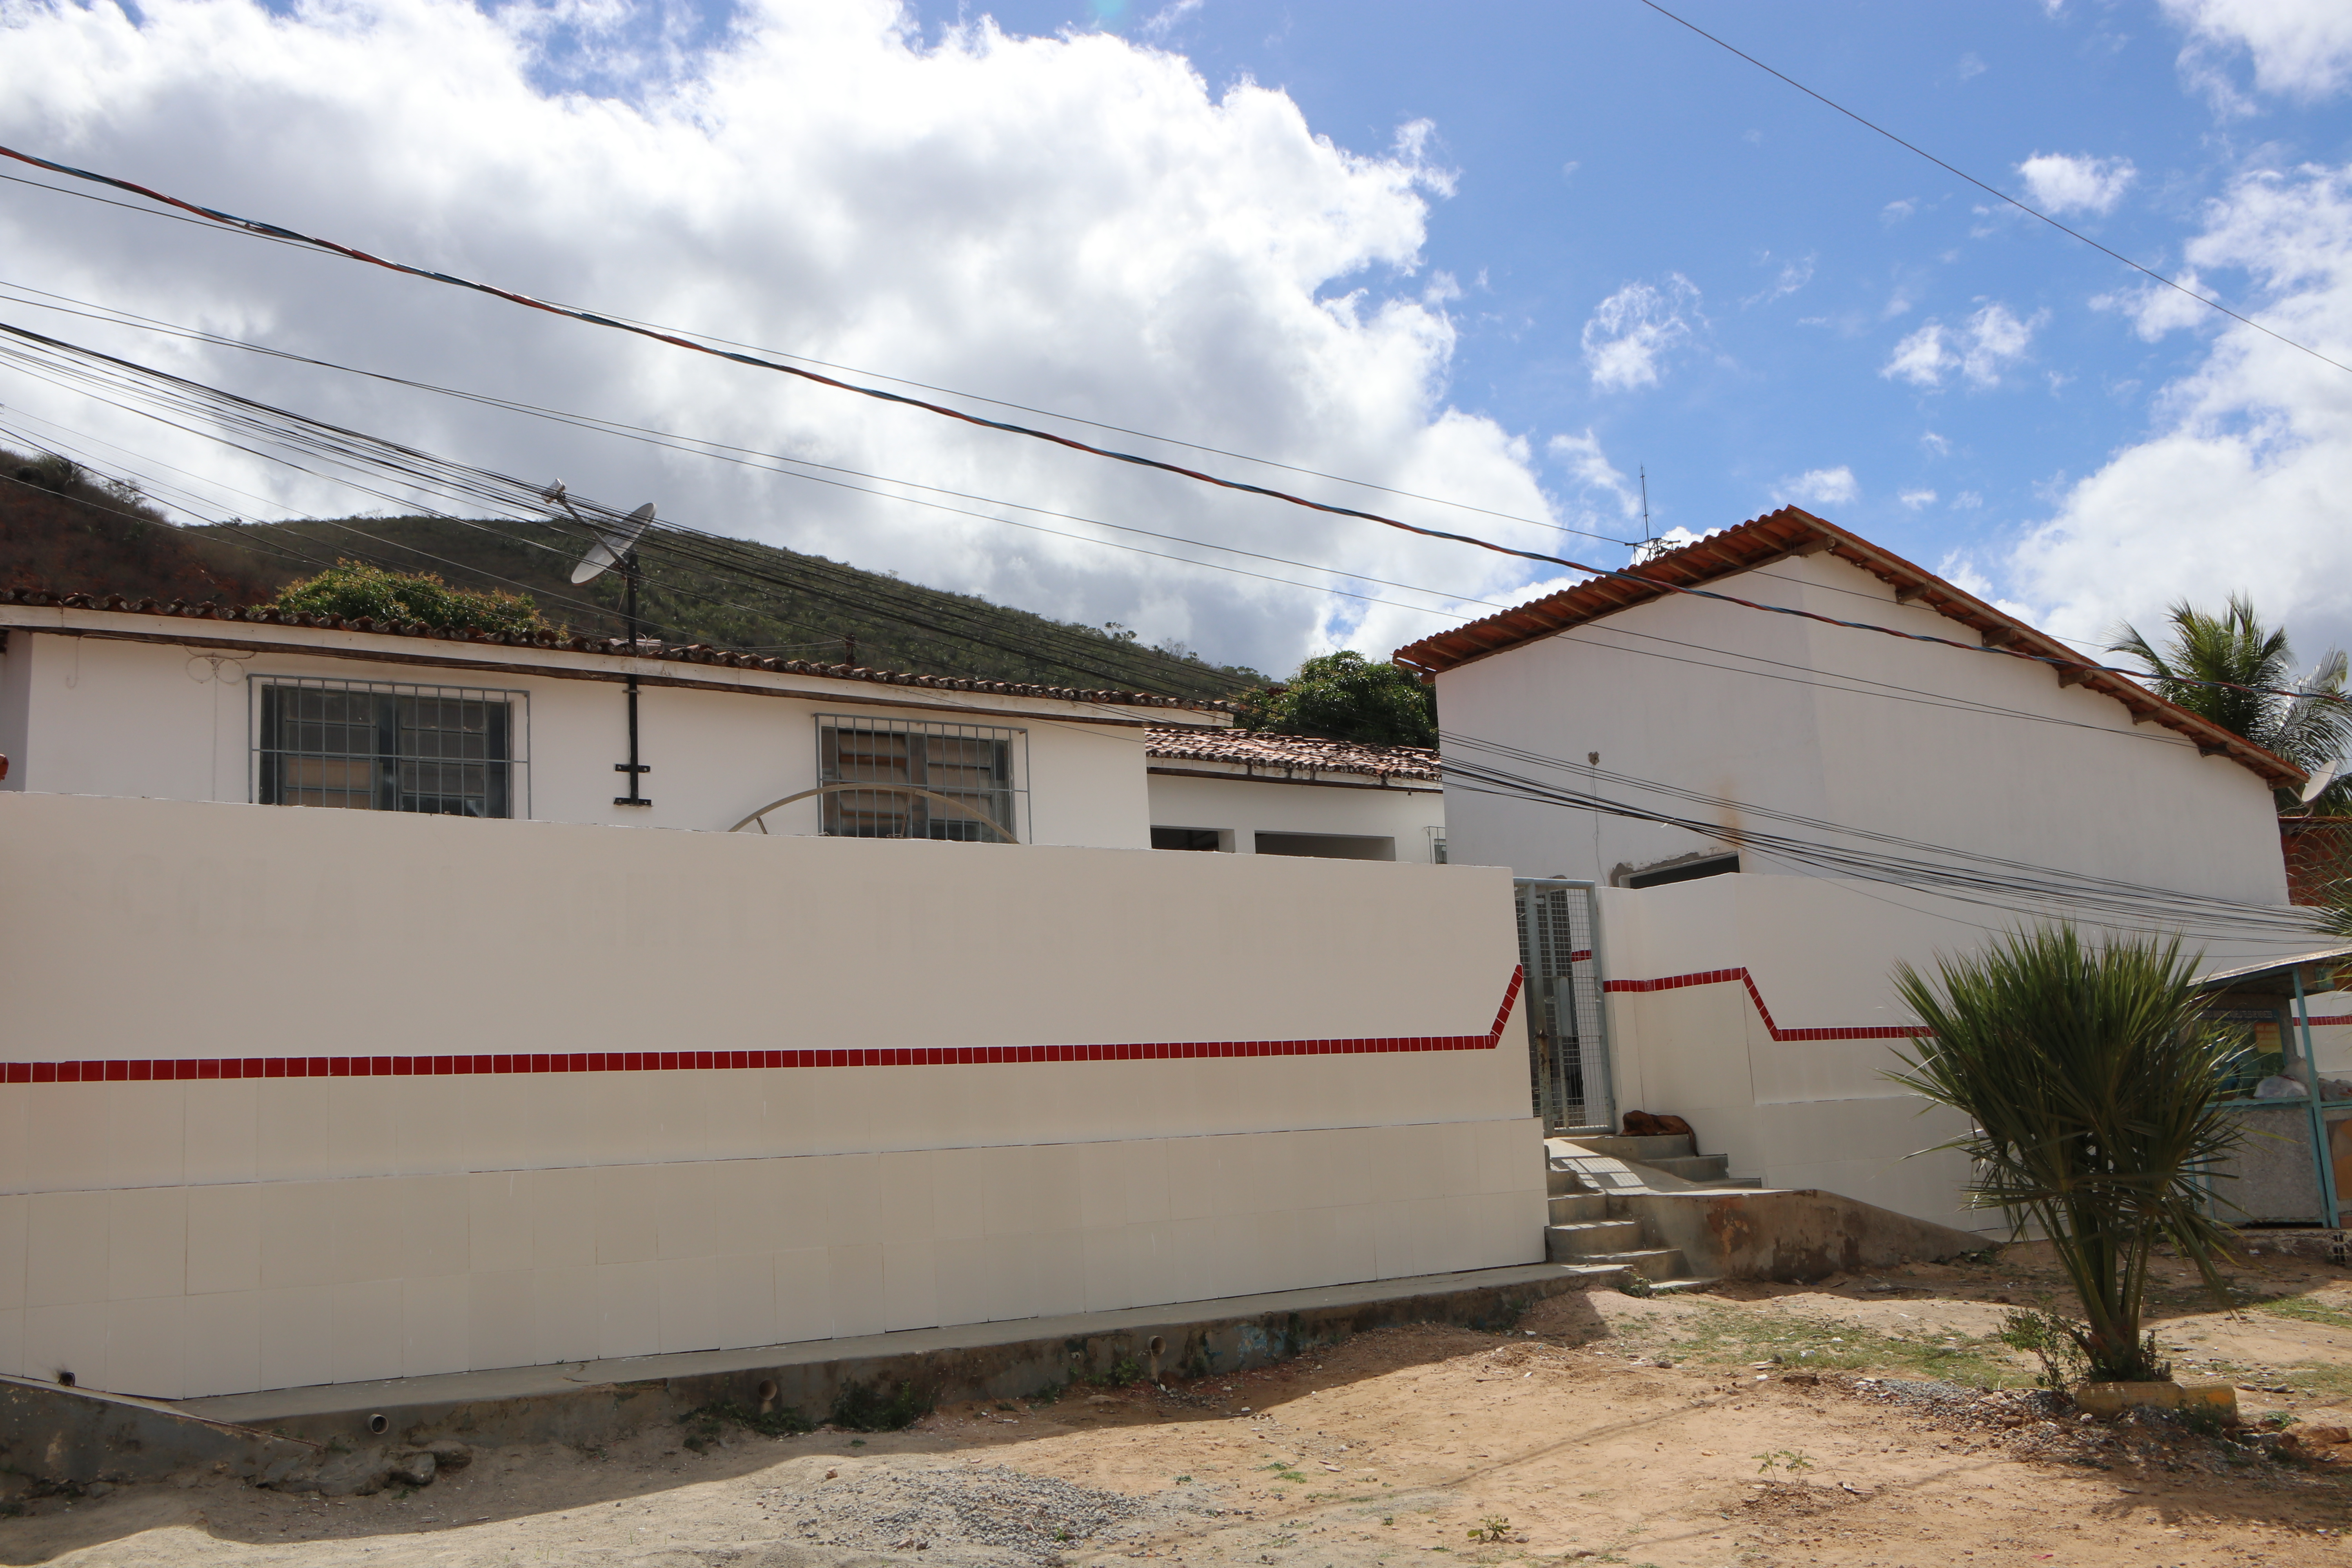 ESCOLA: Reforma e Ampliação da Escola Municipal Agnelo Teles - Barragem da Pedra